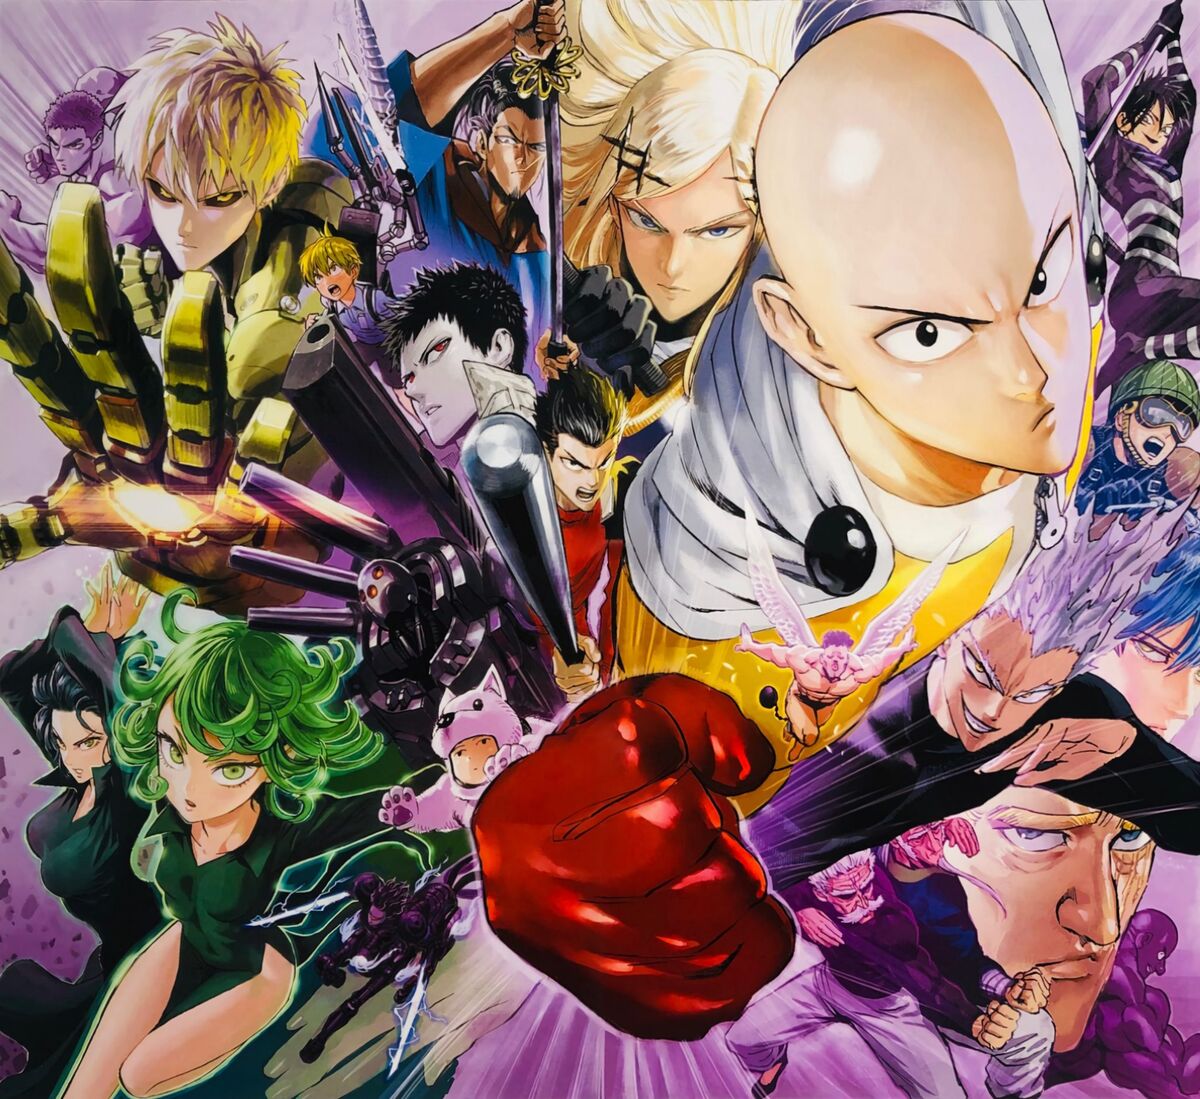 animeuniverse.watch  One punch man manga, One punch man, One punch man  anime